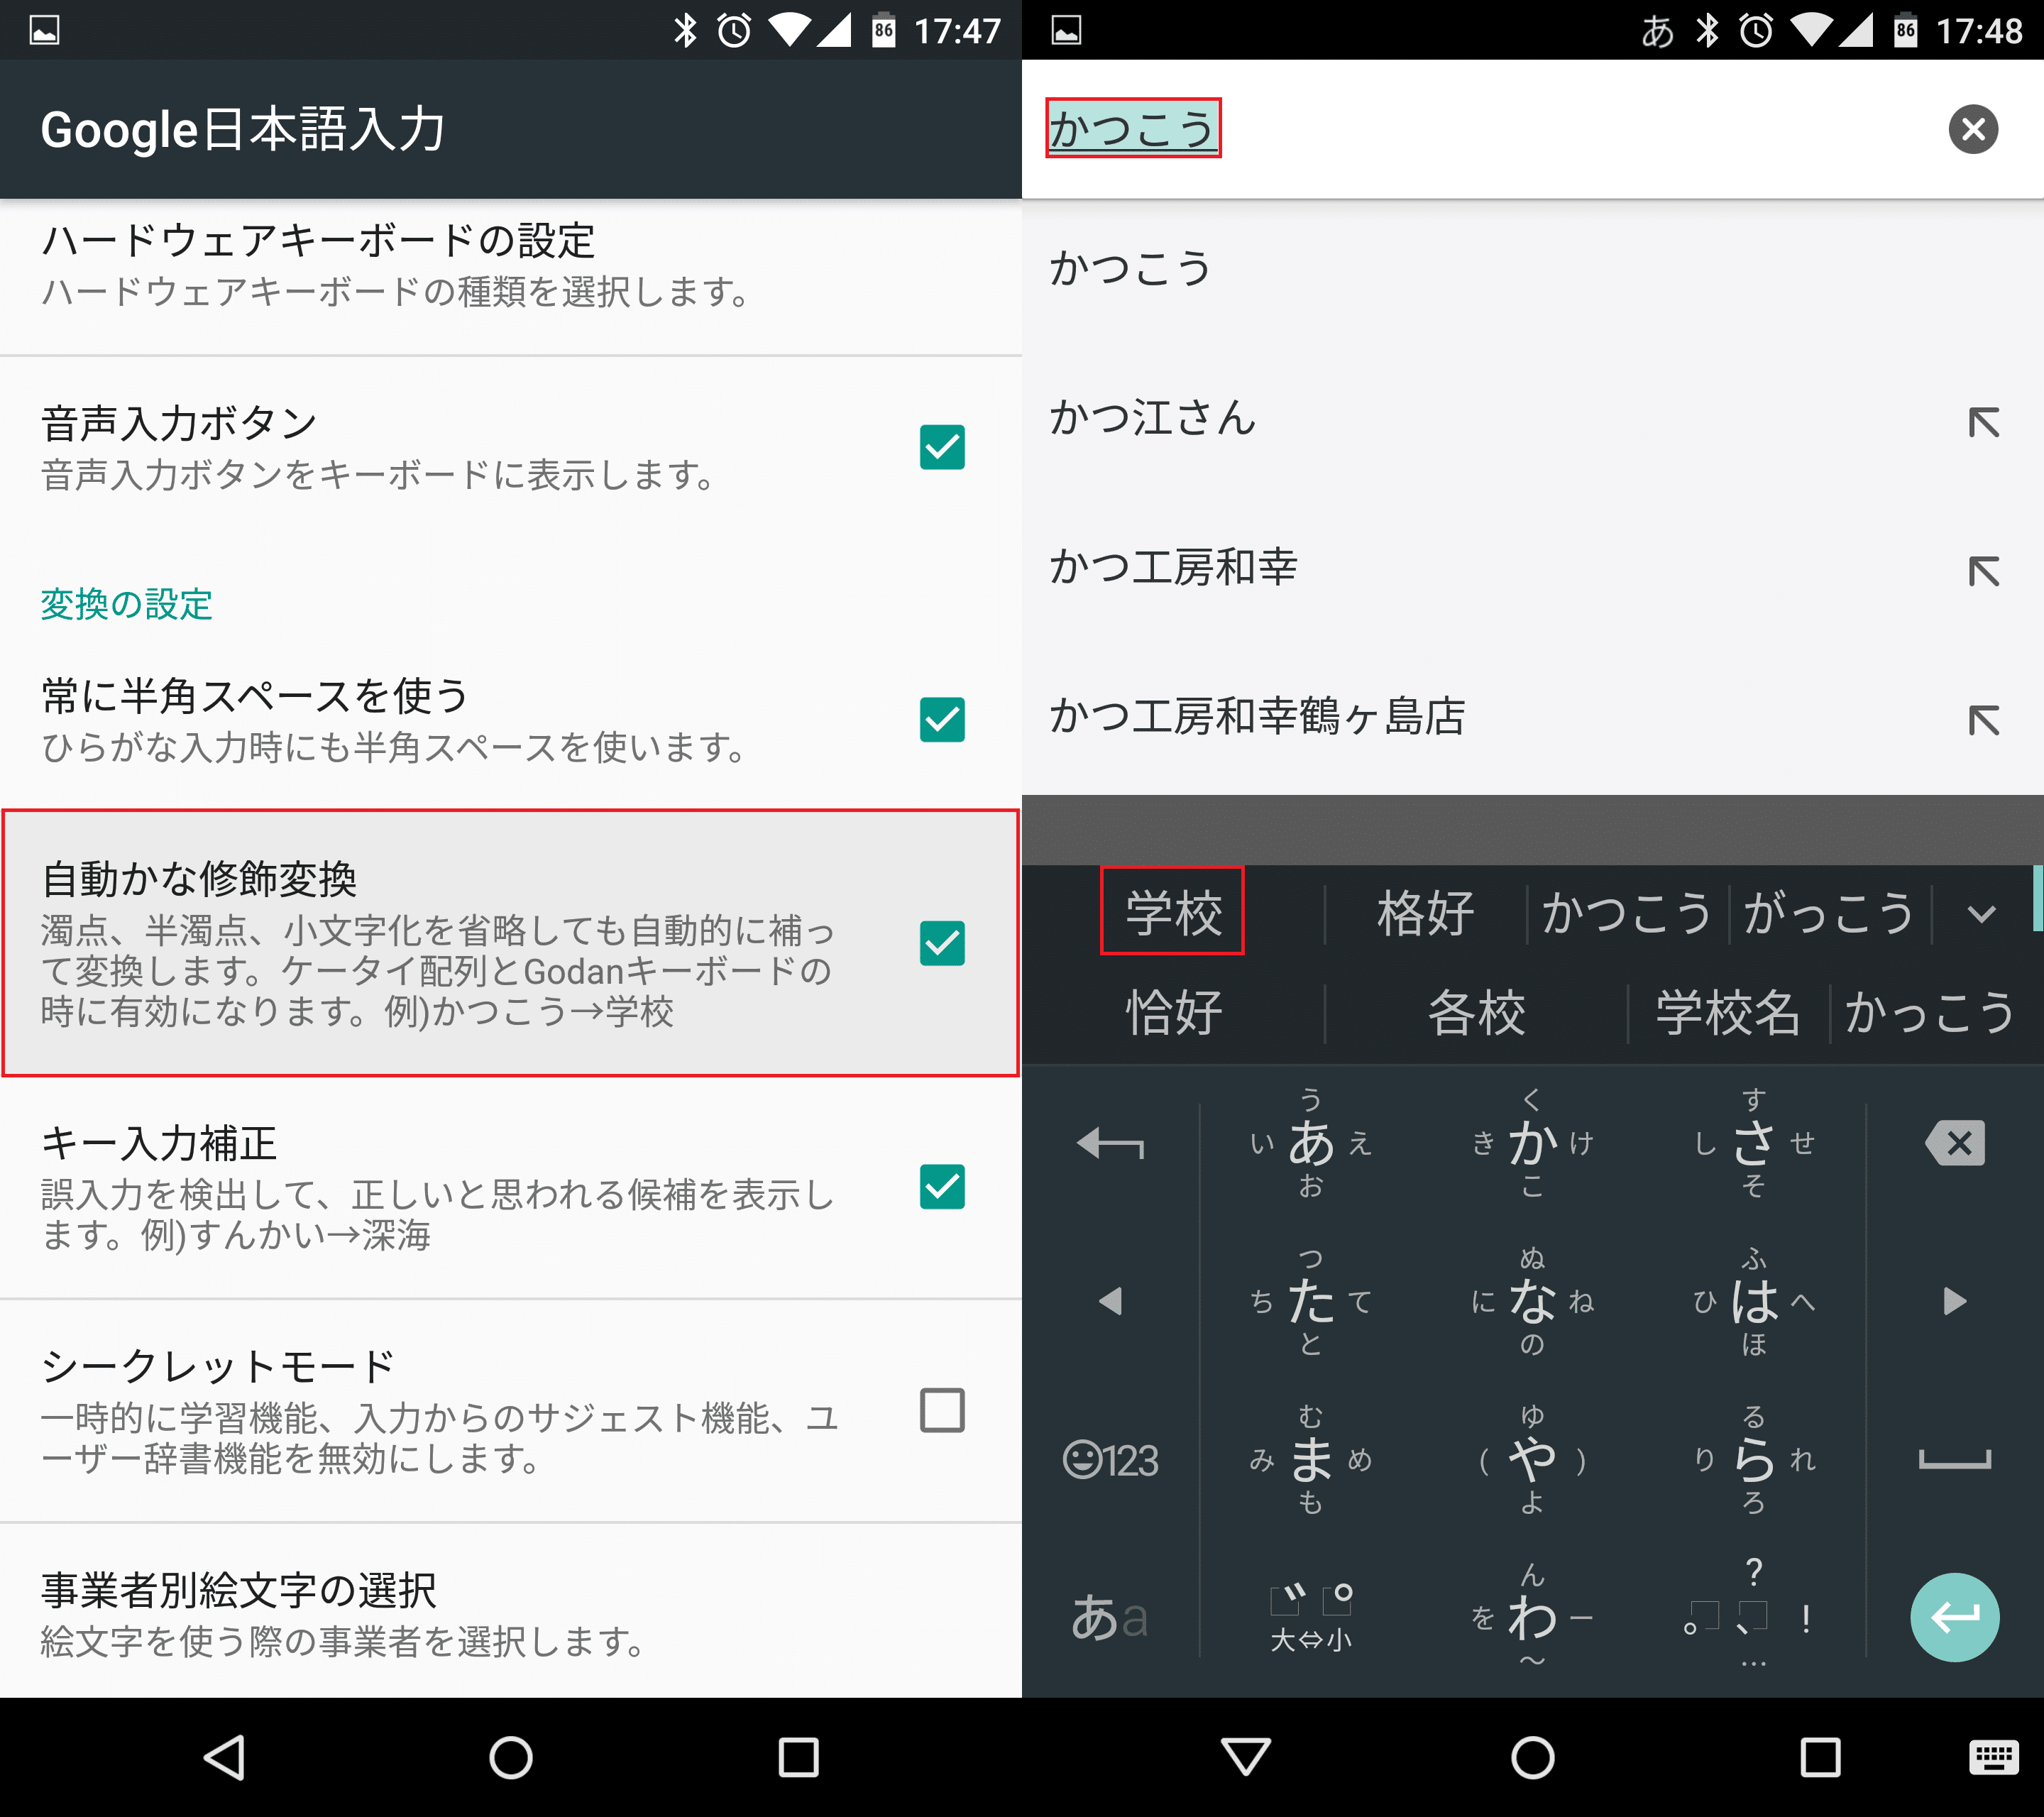 Google日本語入力android版の設定と便利な使い方まとめ アンドロイドラバー